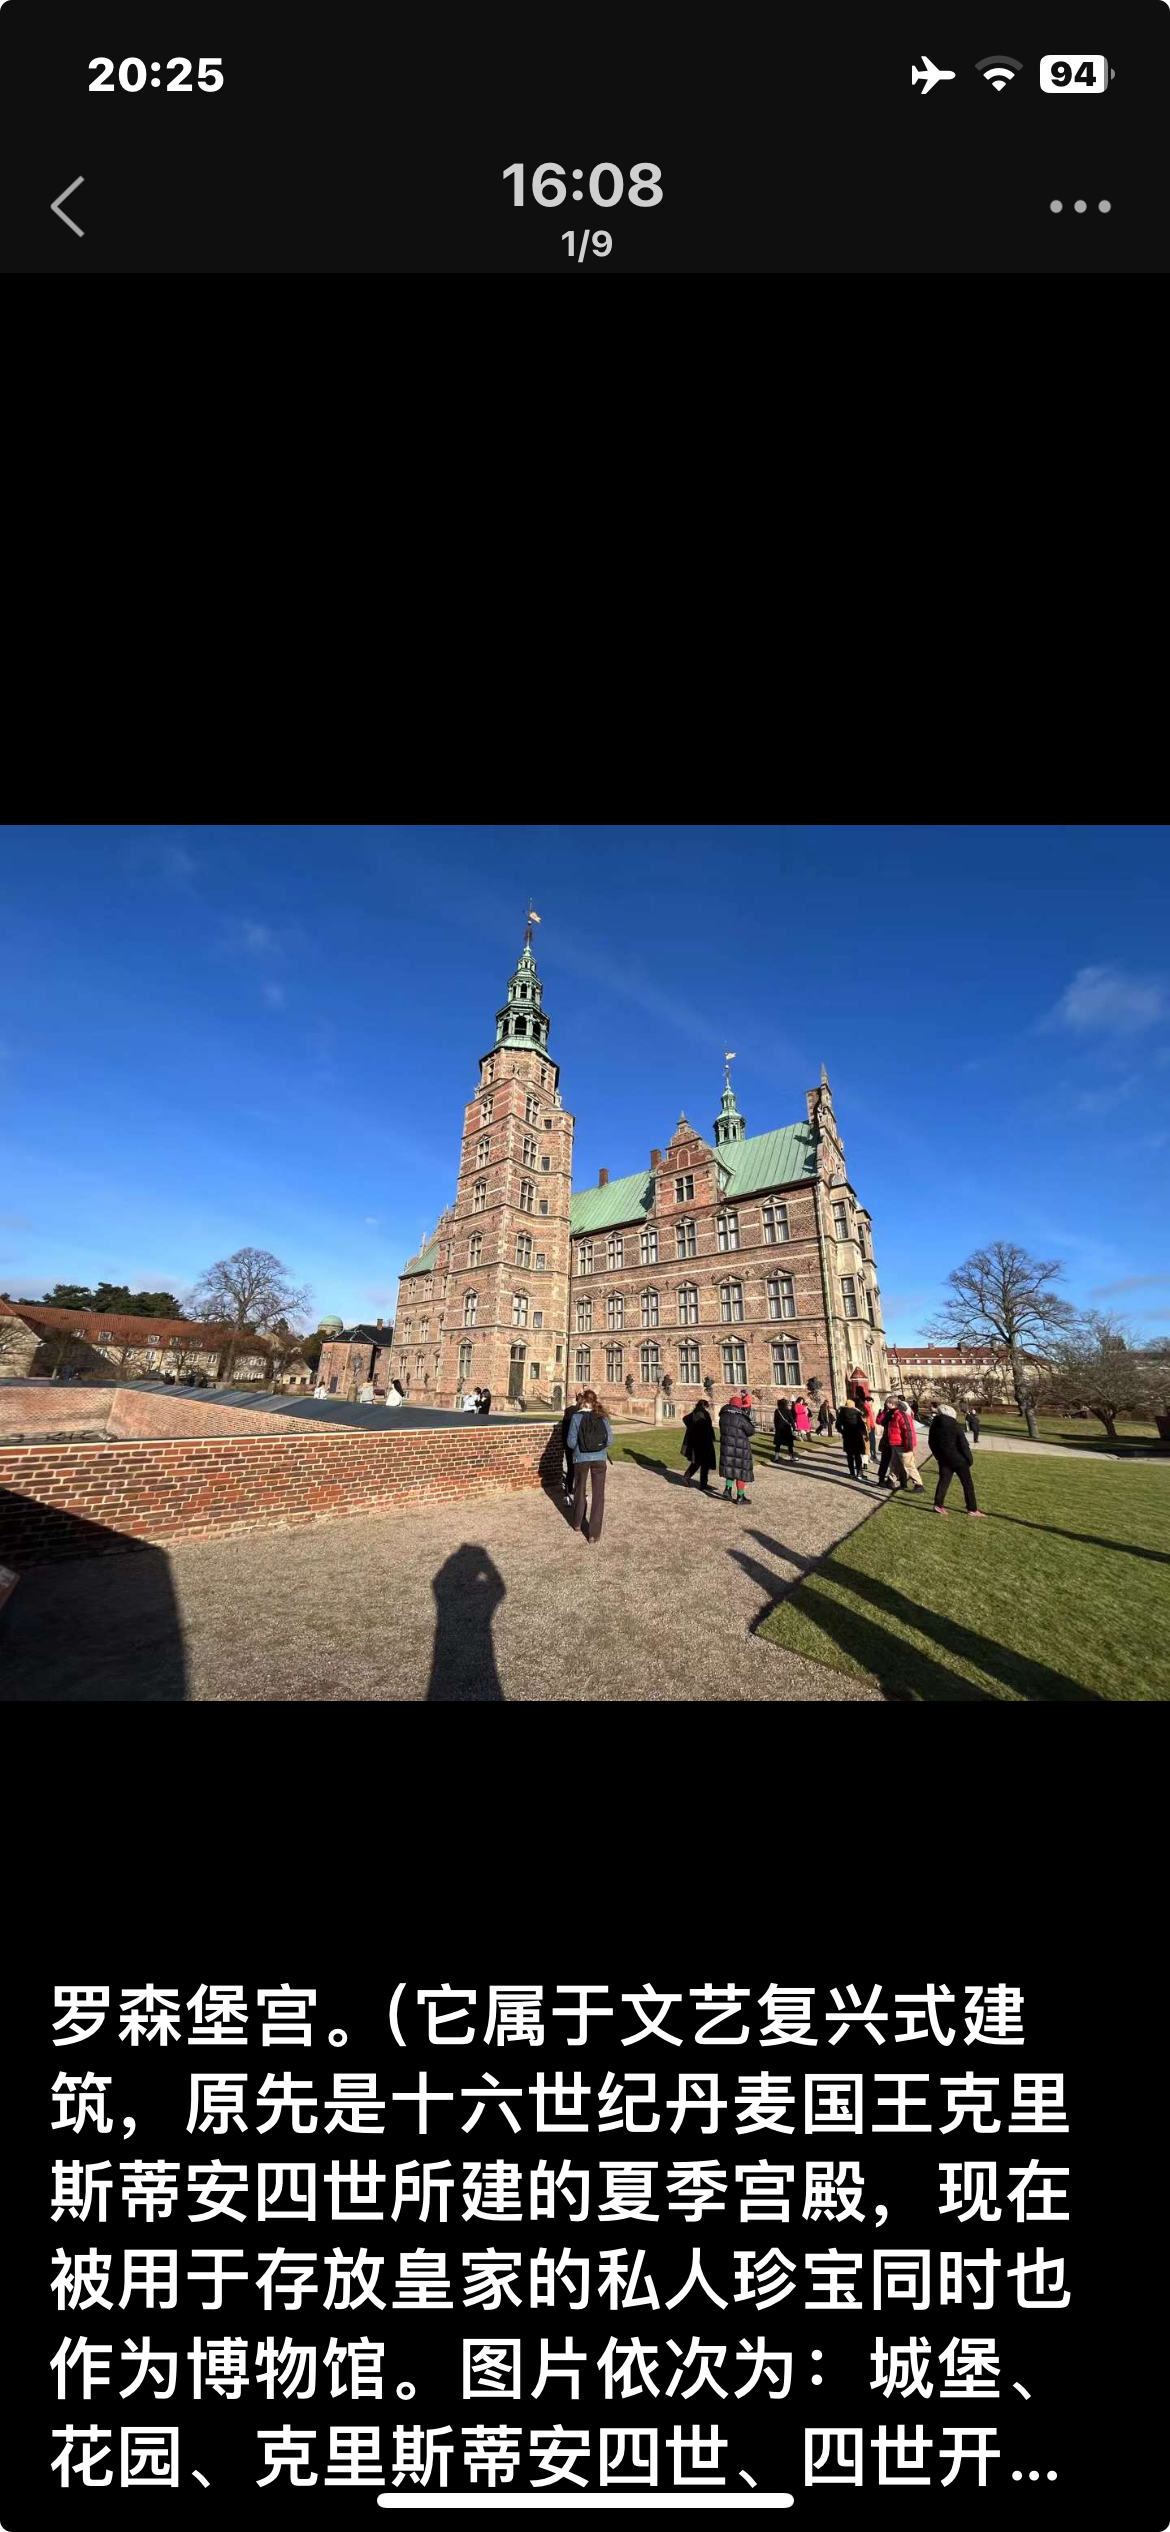 罗森堡宫。（它属于文艺复兴式建筑，原先是十六世纪丹麦国王克里斯蒂安四世所建的夏季宫殿，现在被用于存放